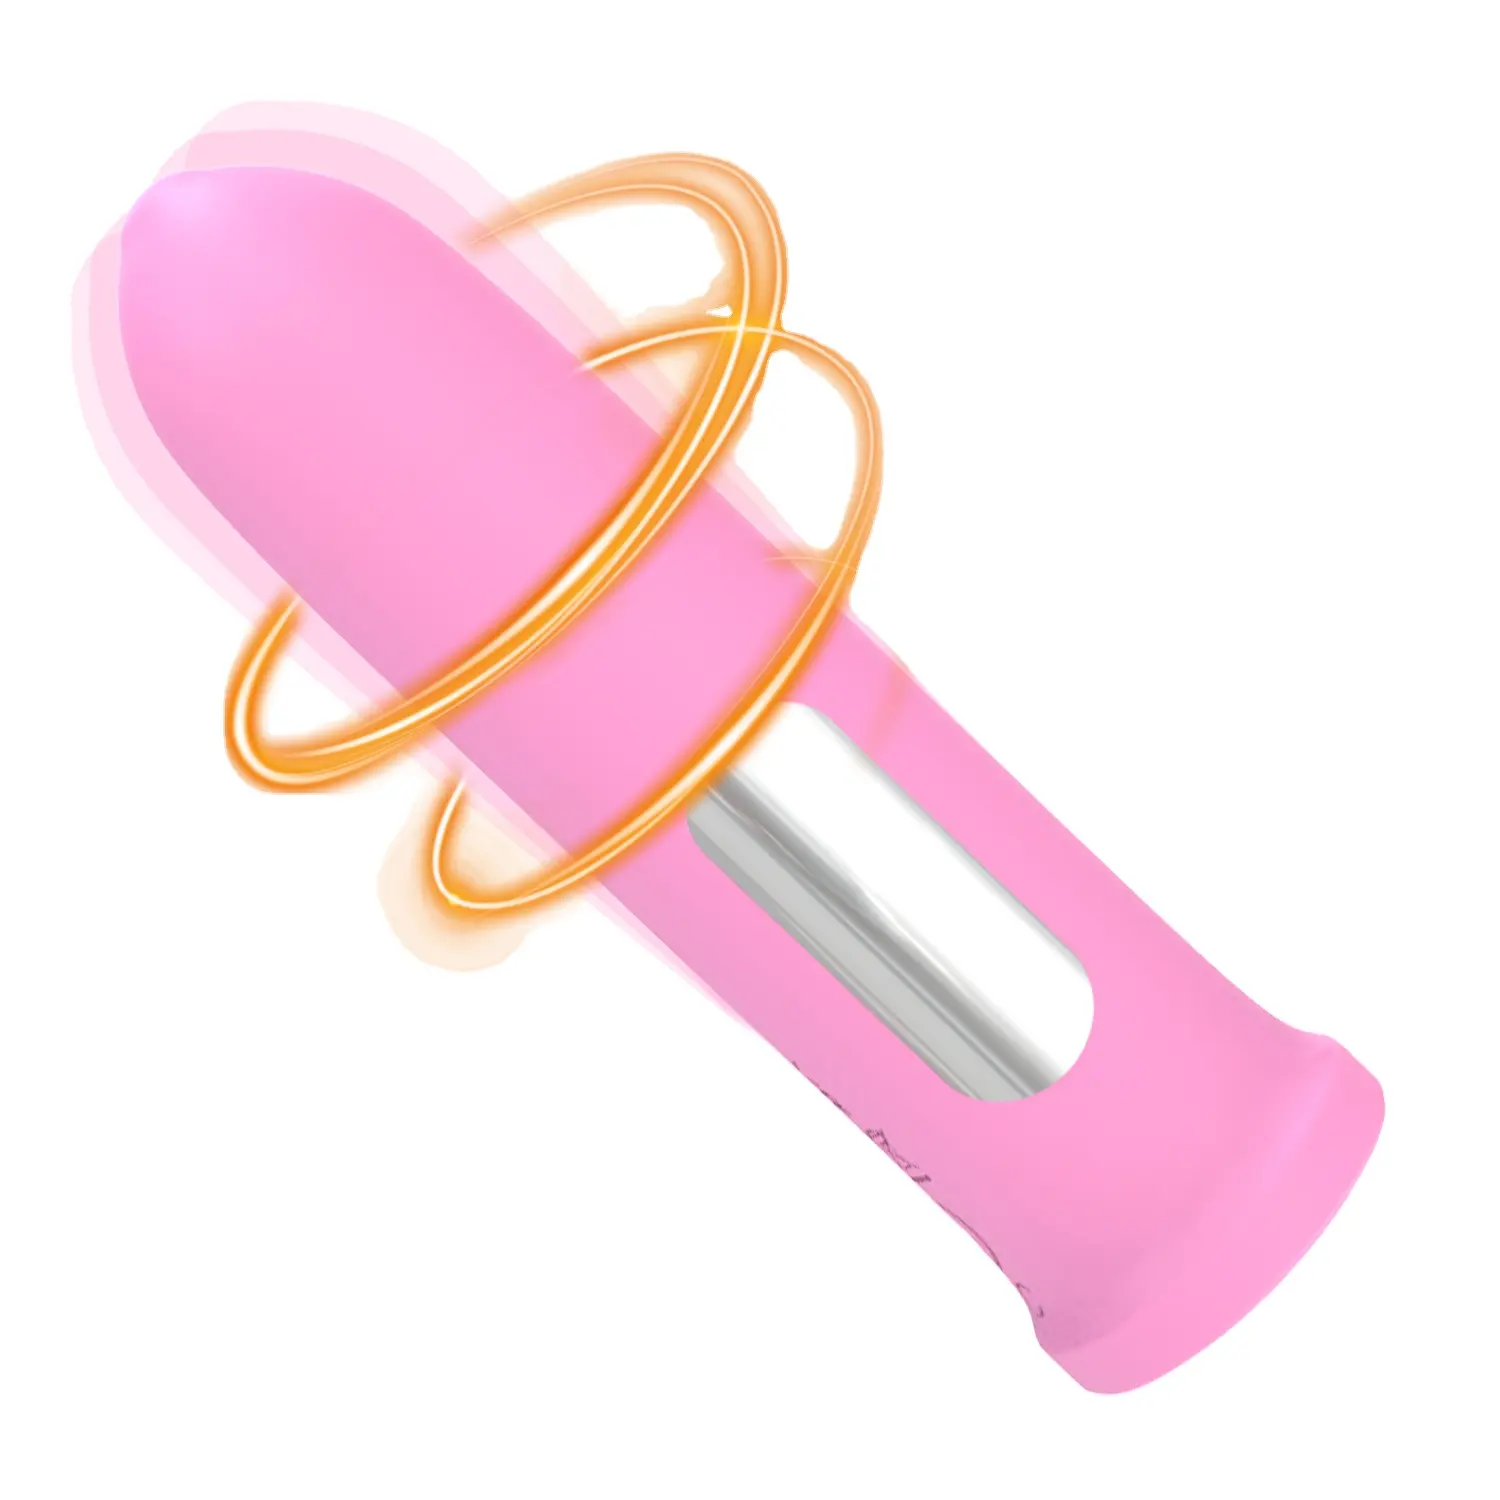 Ylove 100% impermeabile morbido liquido silicone con 10 potenti modalità di vibrazione nuovo proiettile vibratore femminile per il piacere sessuale delle donne